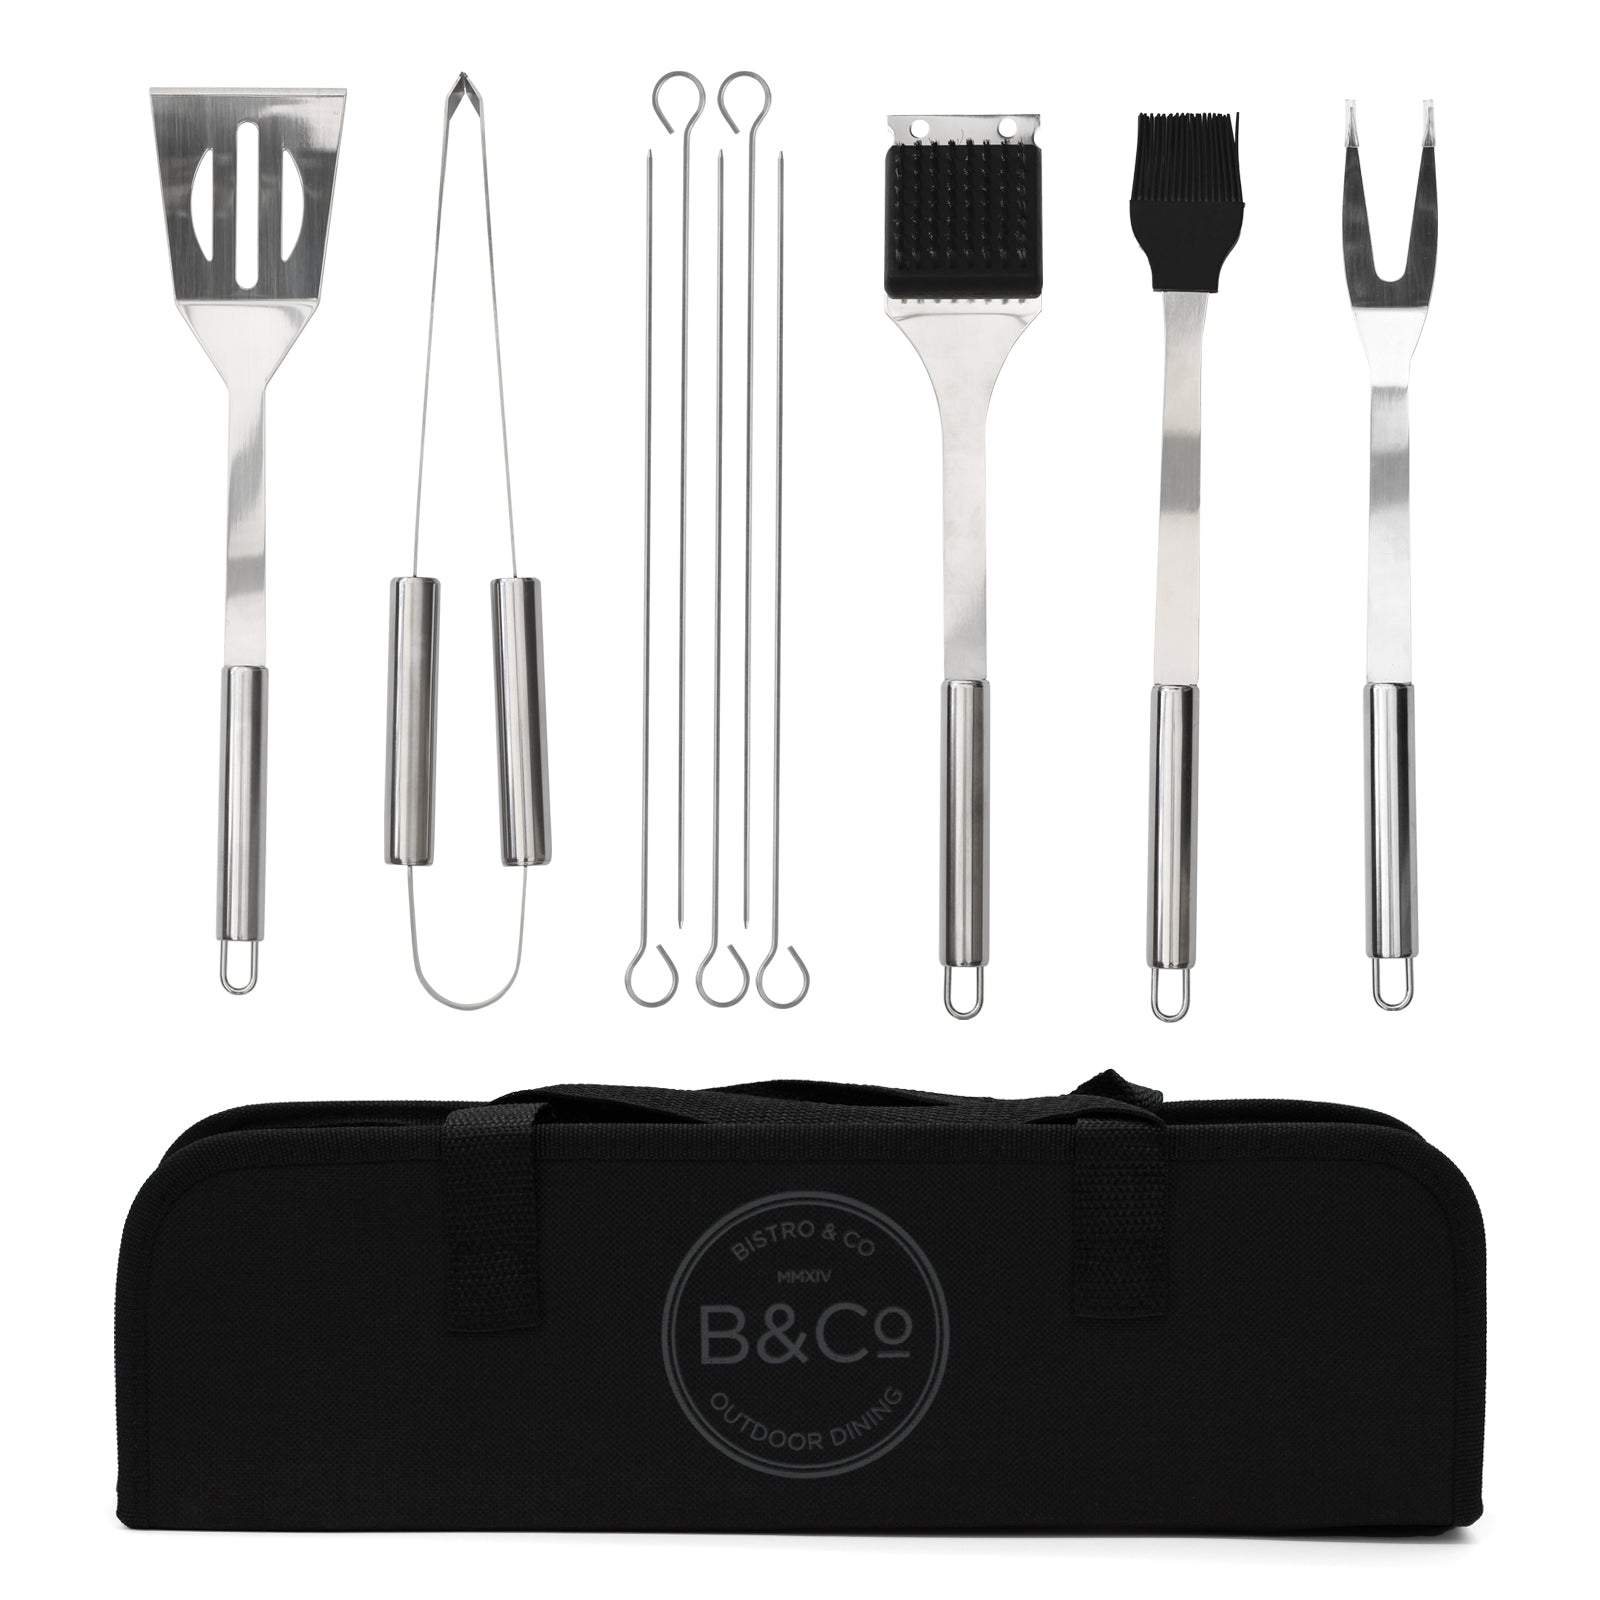 10 piece bbq tool set with storage case